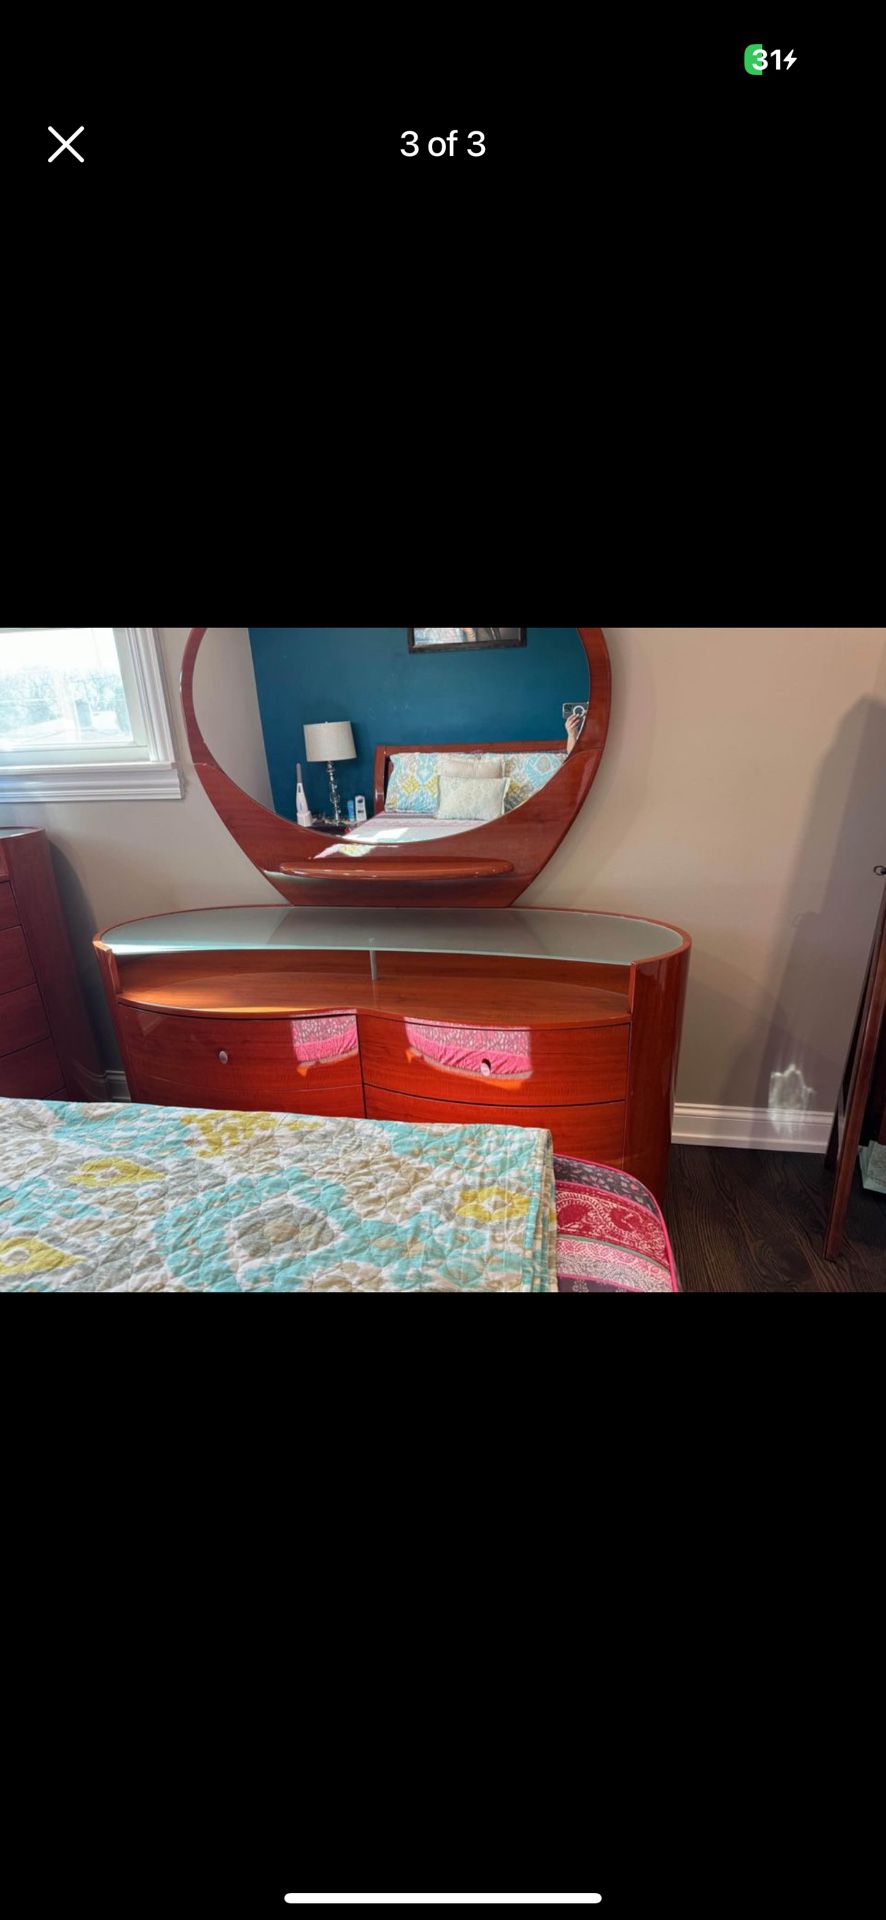 Queen Size Bedroom Set